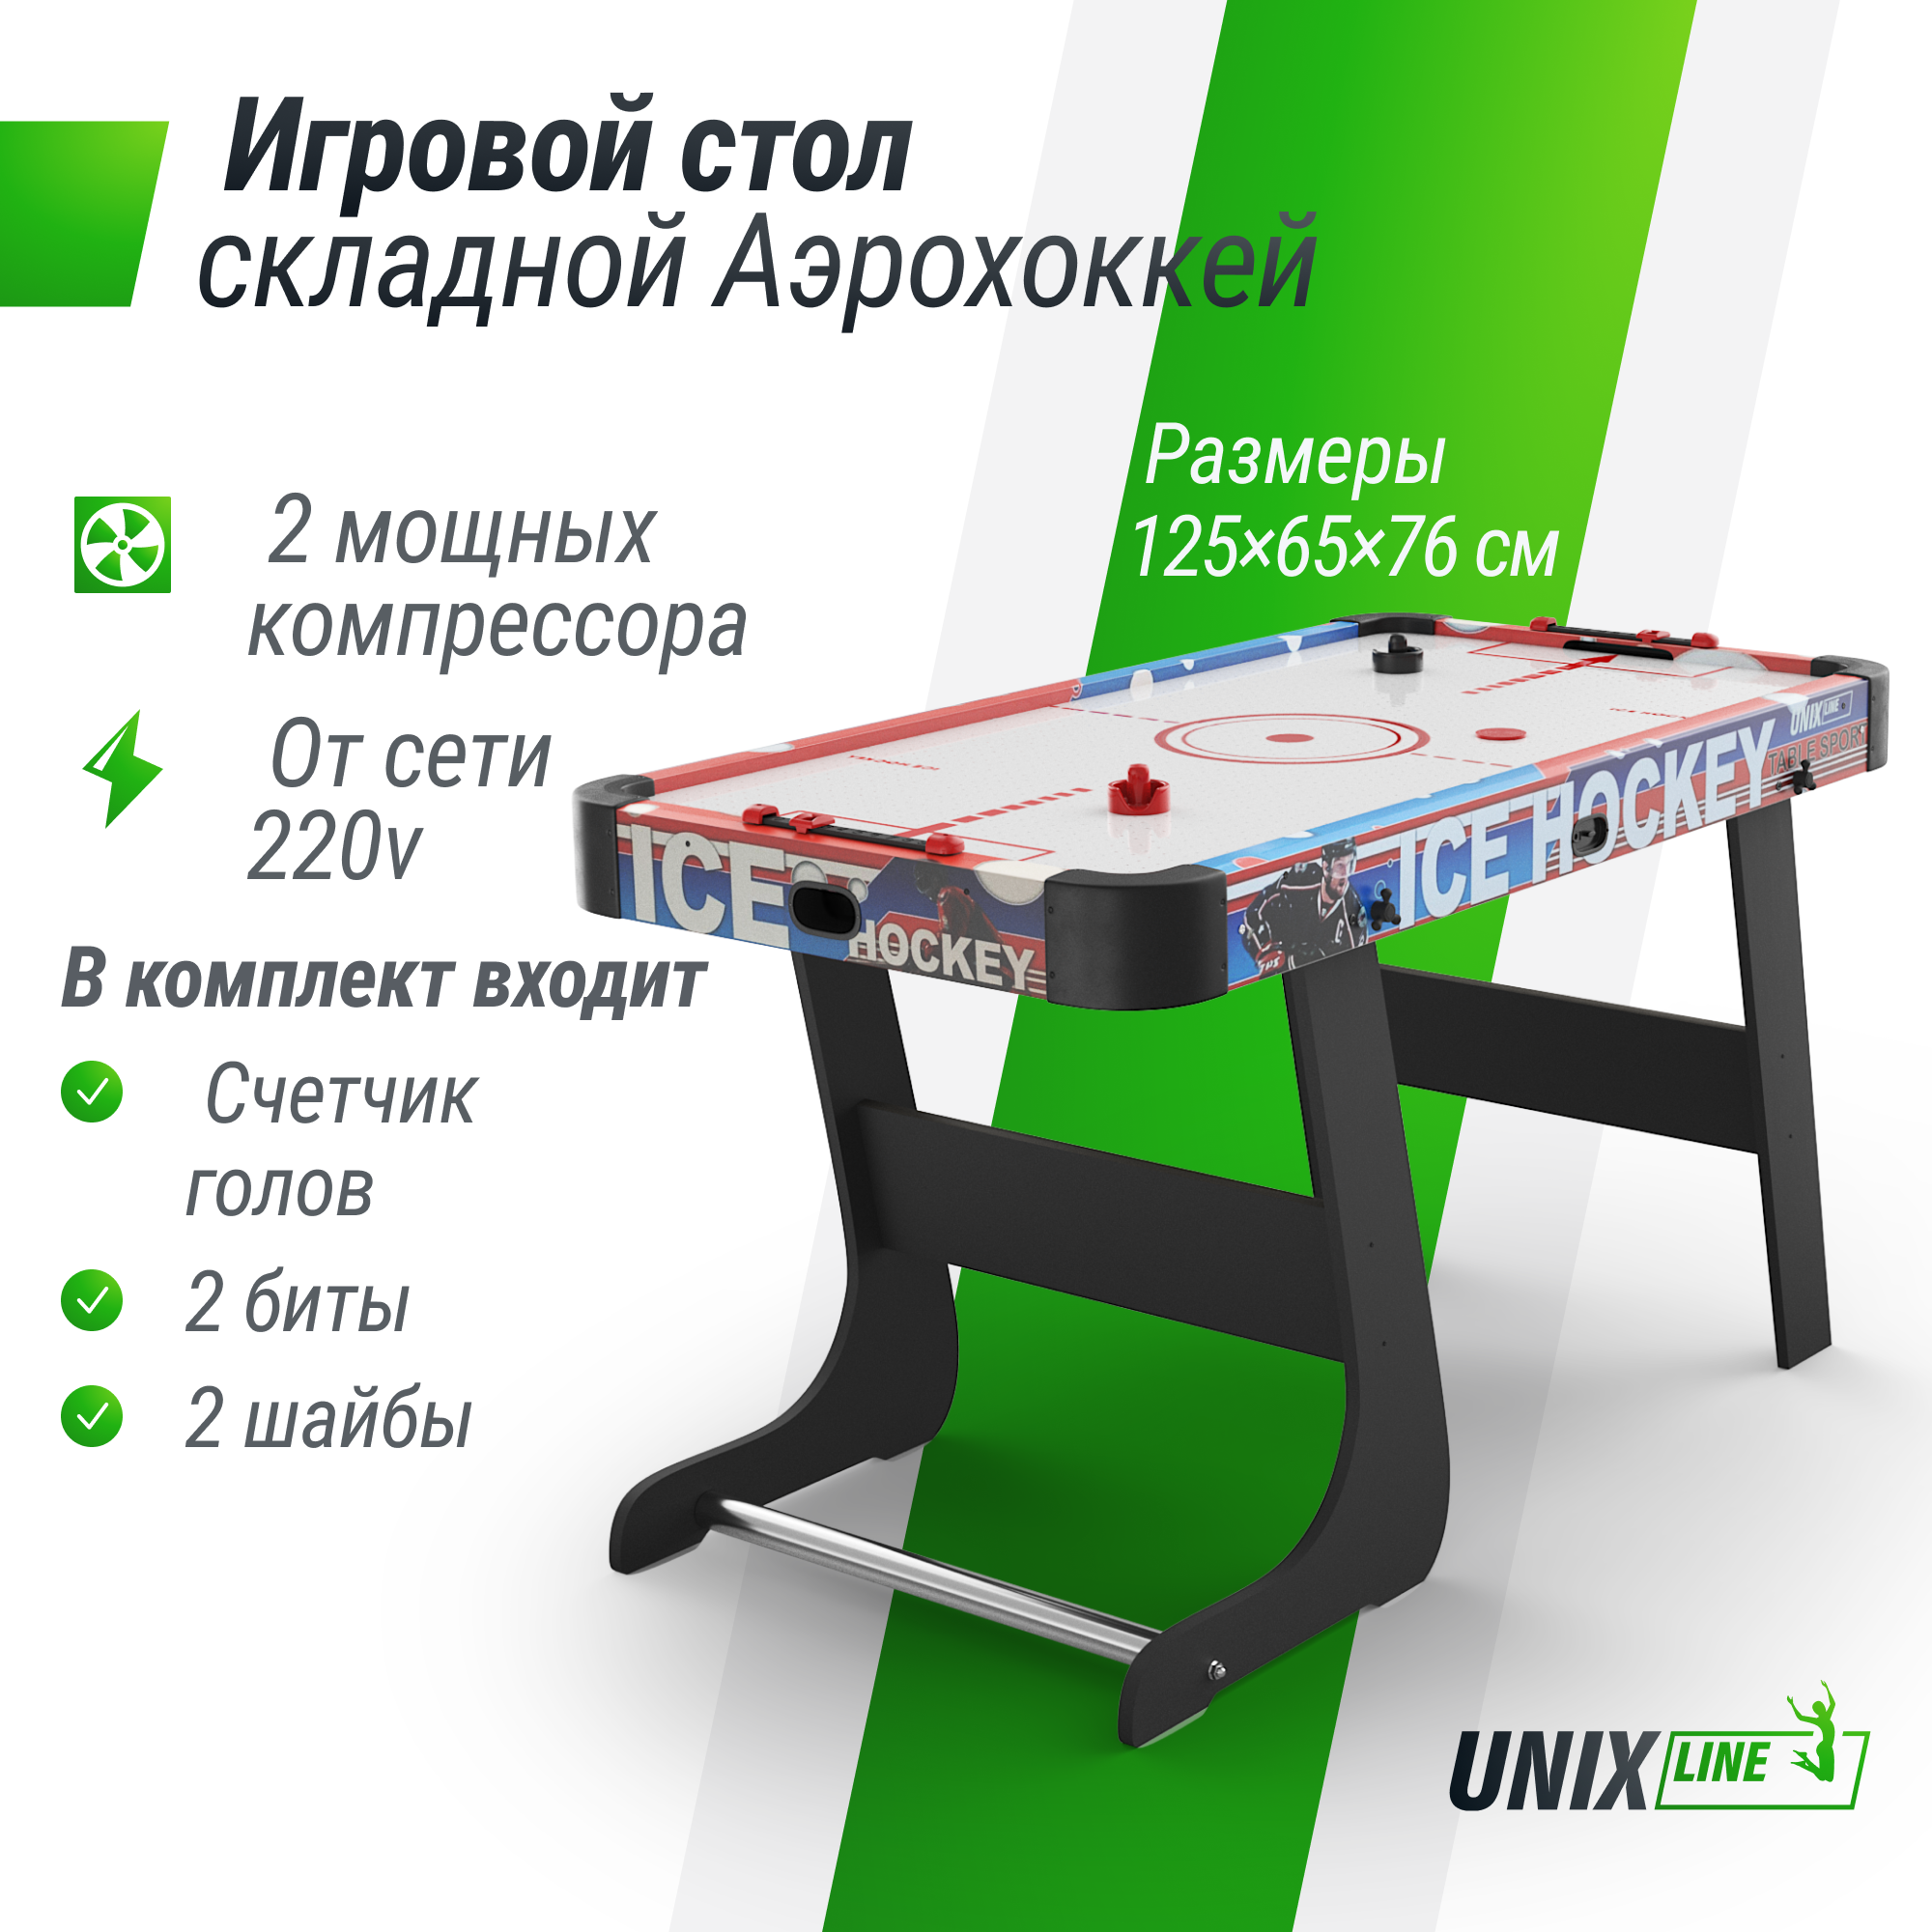 Игровой стол складной UNIX Line Аэрохоккей 125х65 cм, большой напольный, от сети 220 В